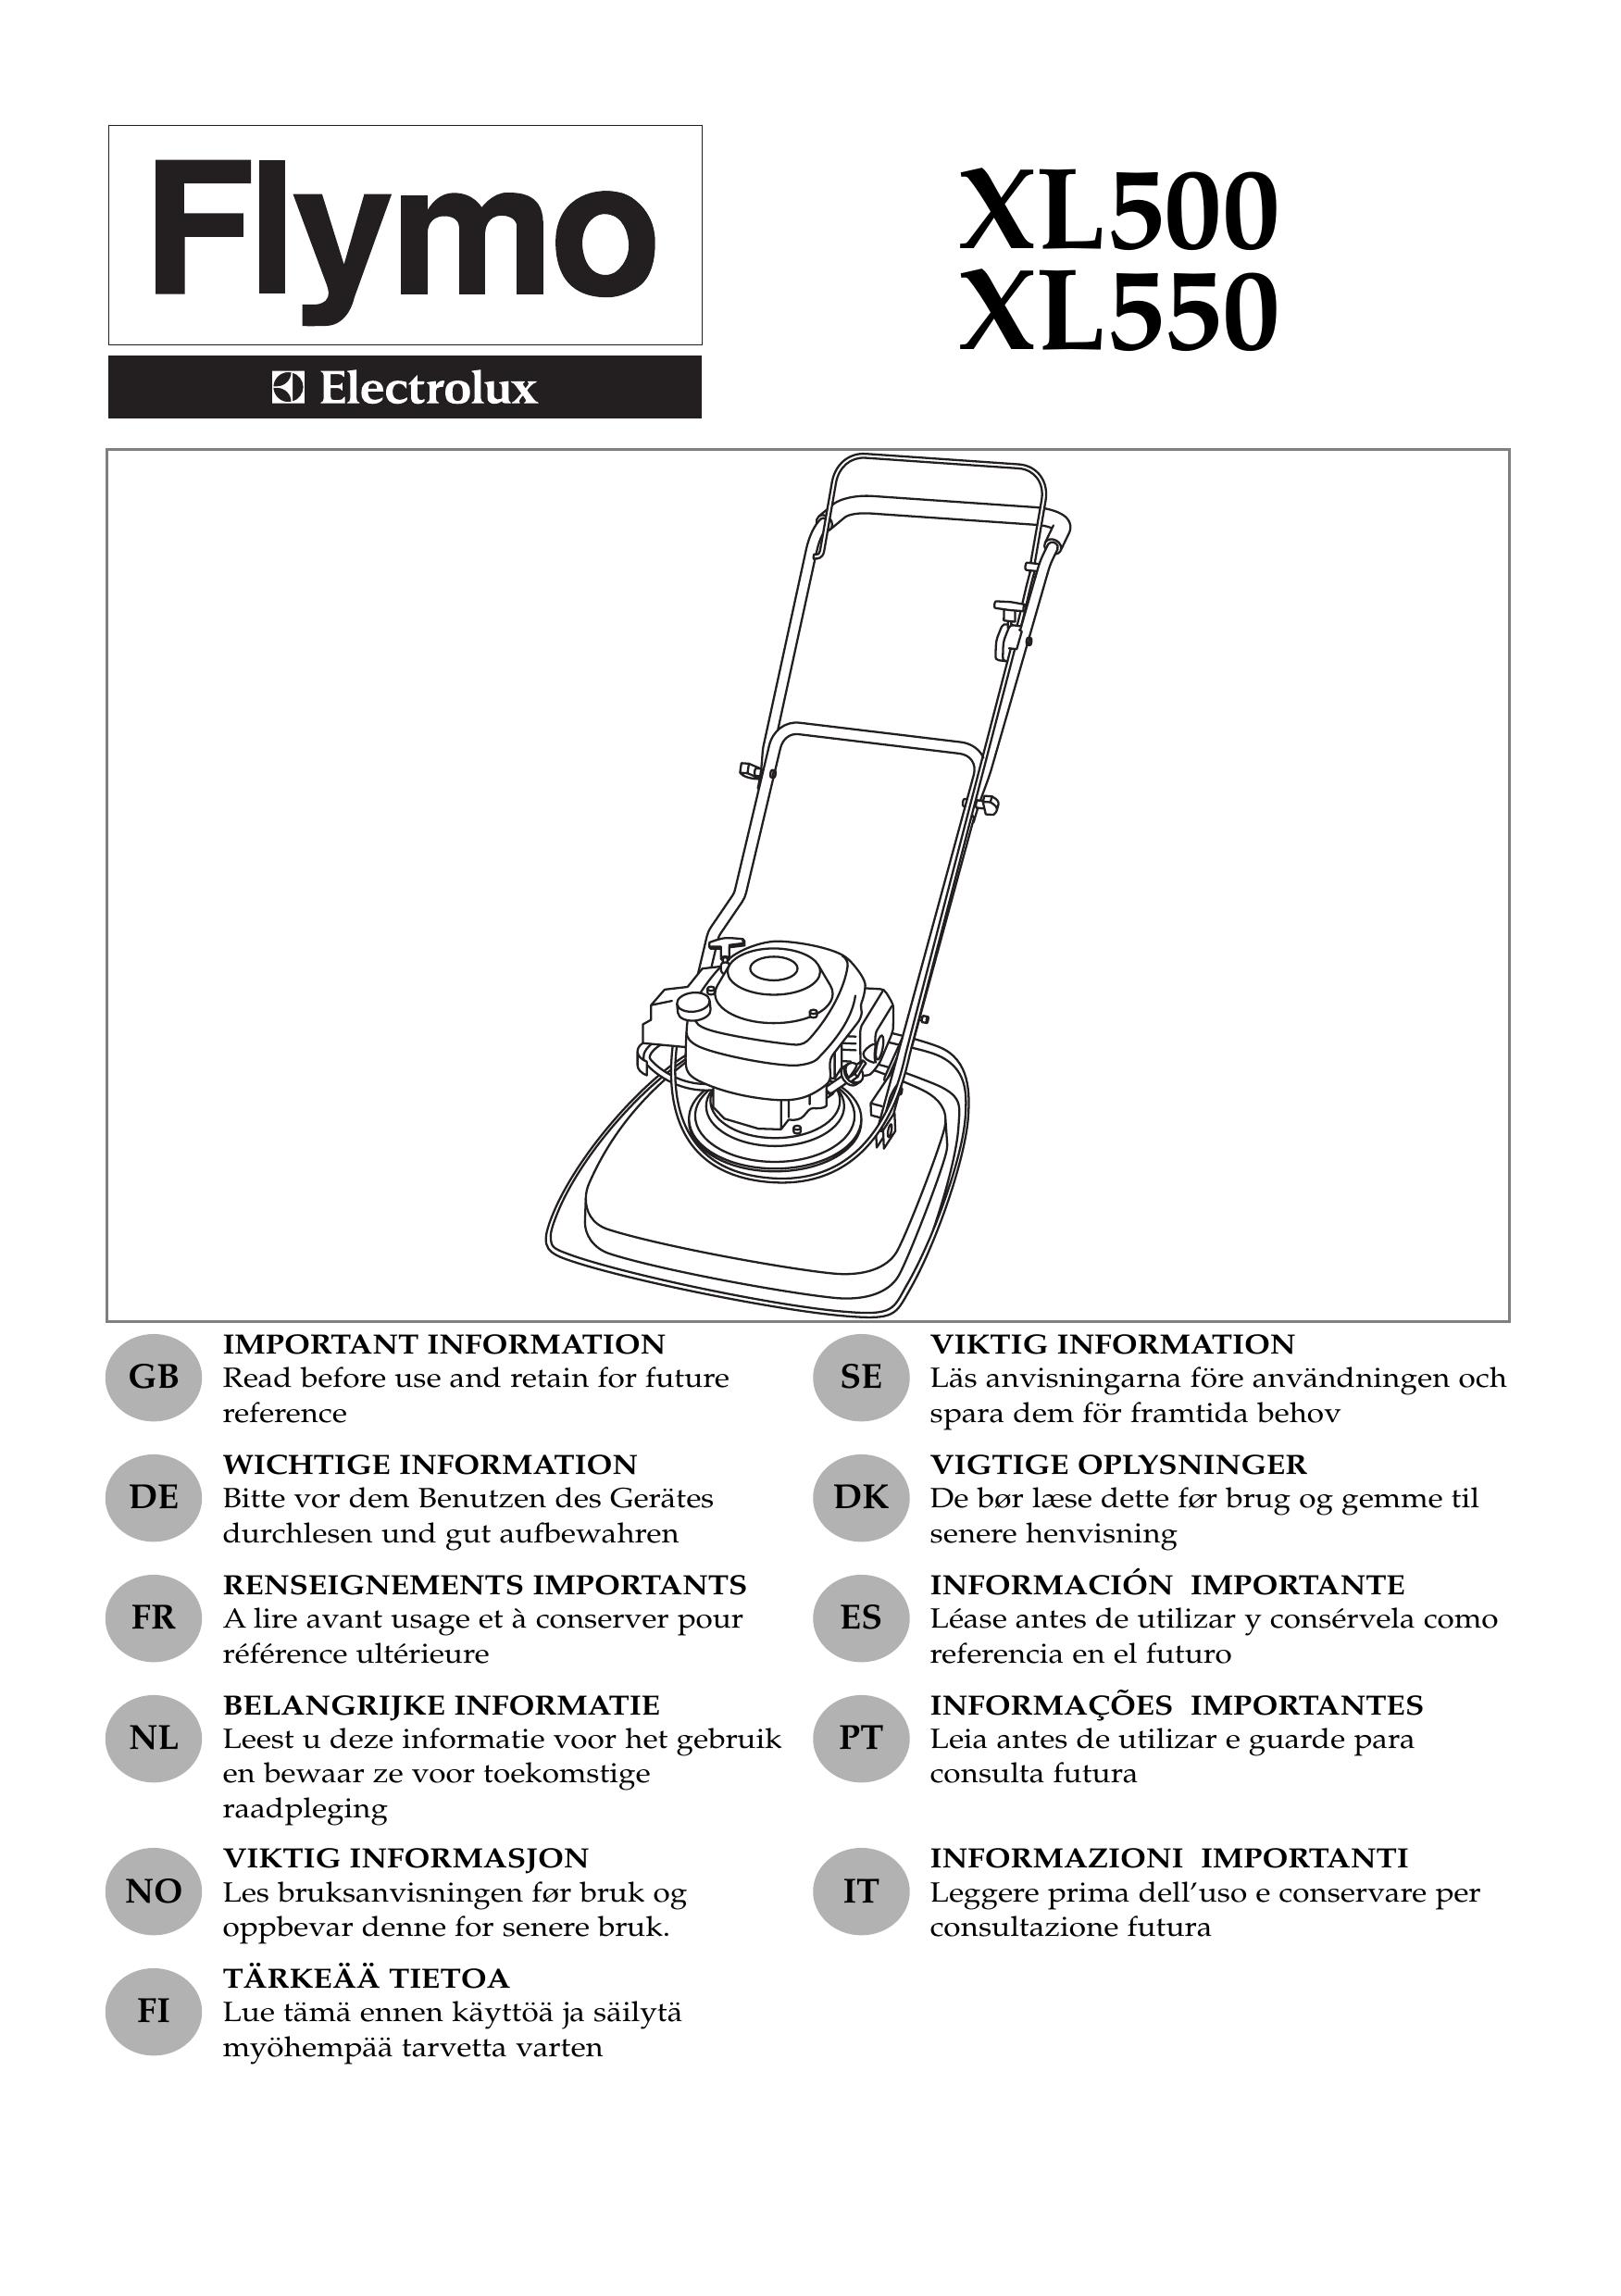 Electrolux XL550 Lawn Mower User Manual